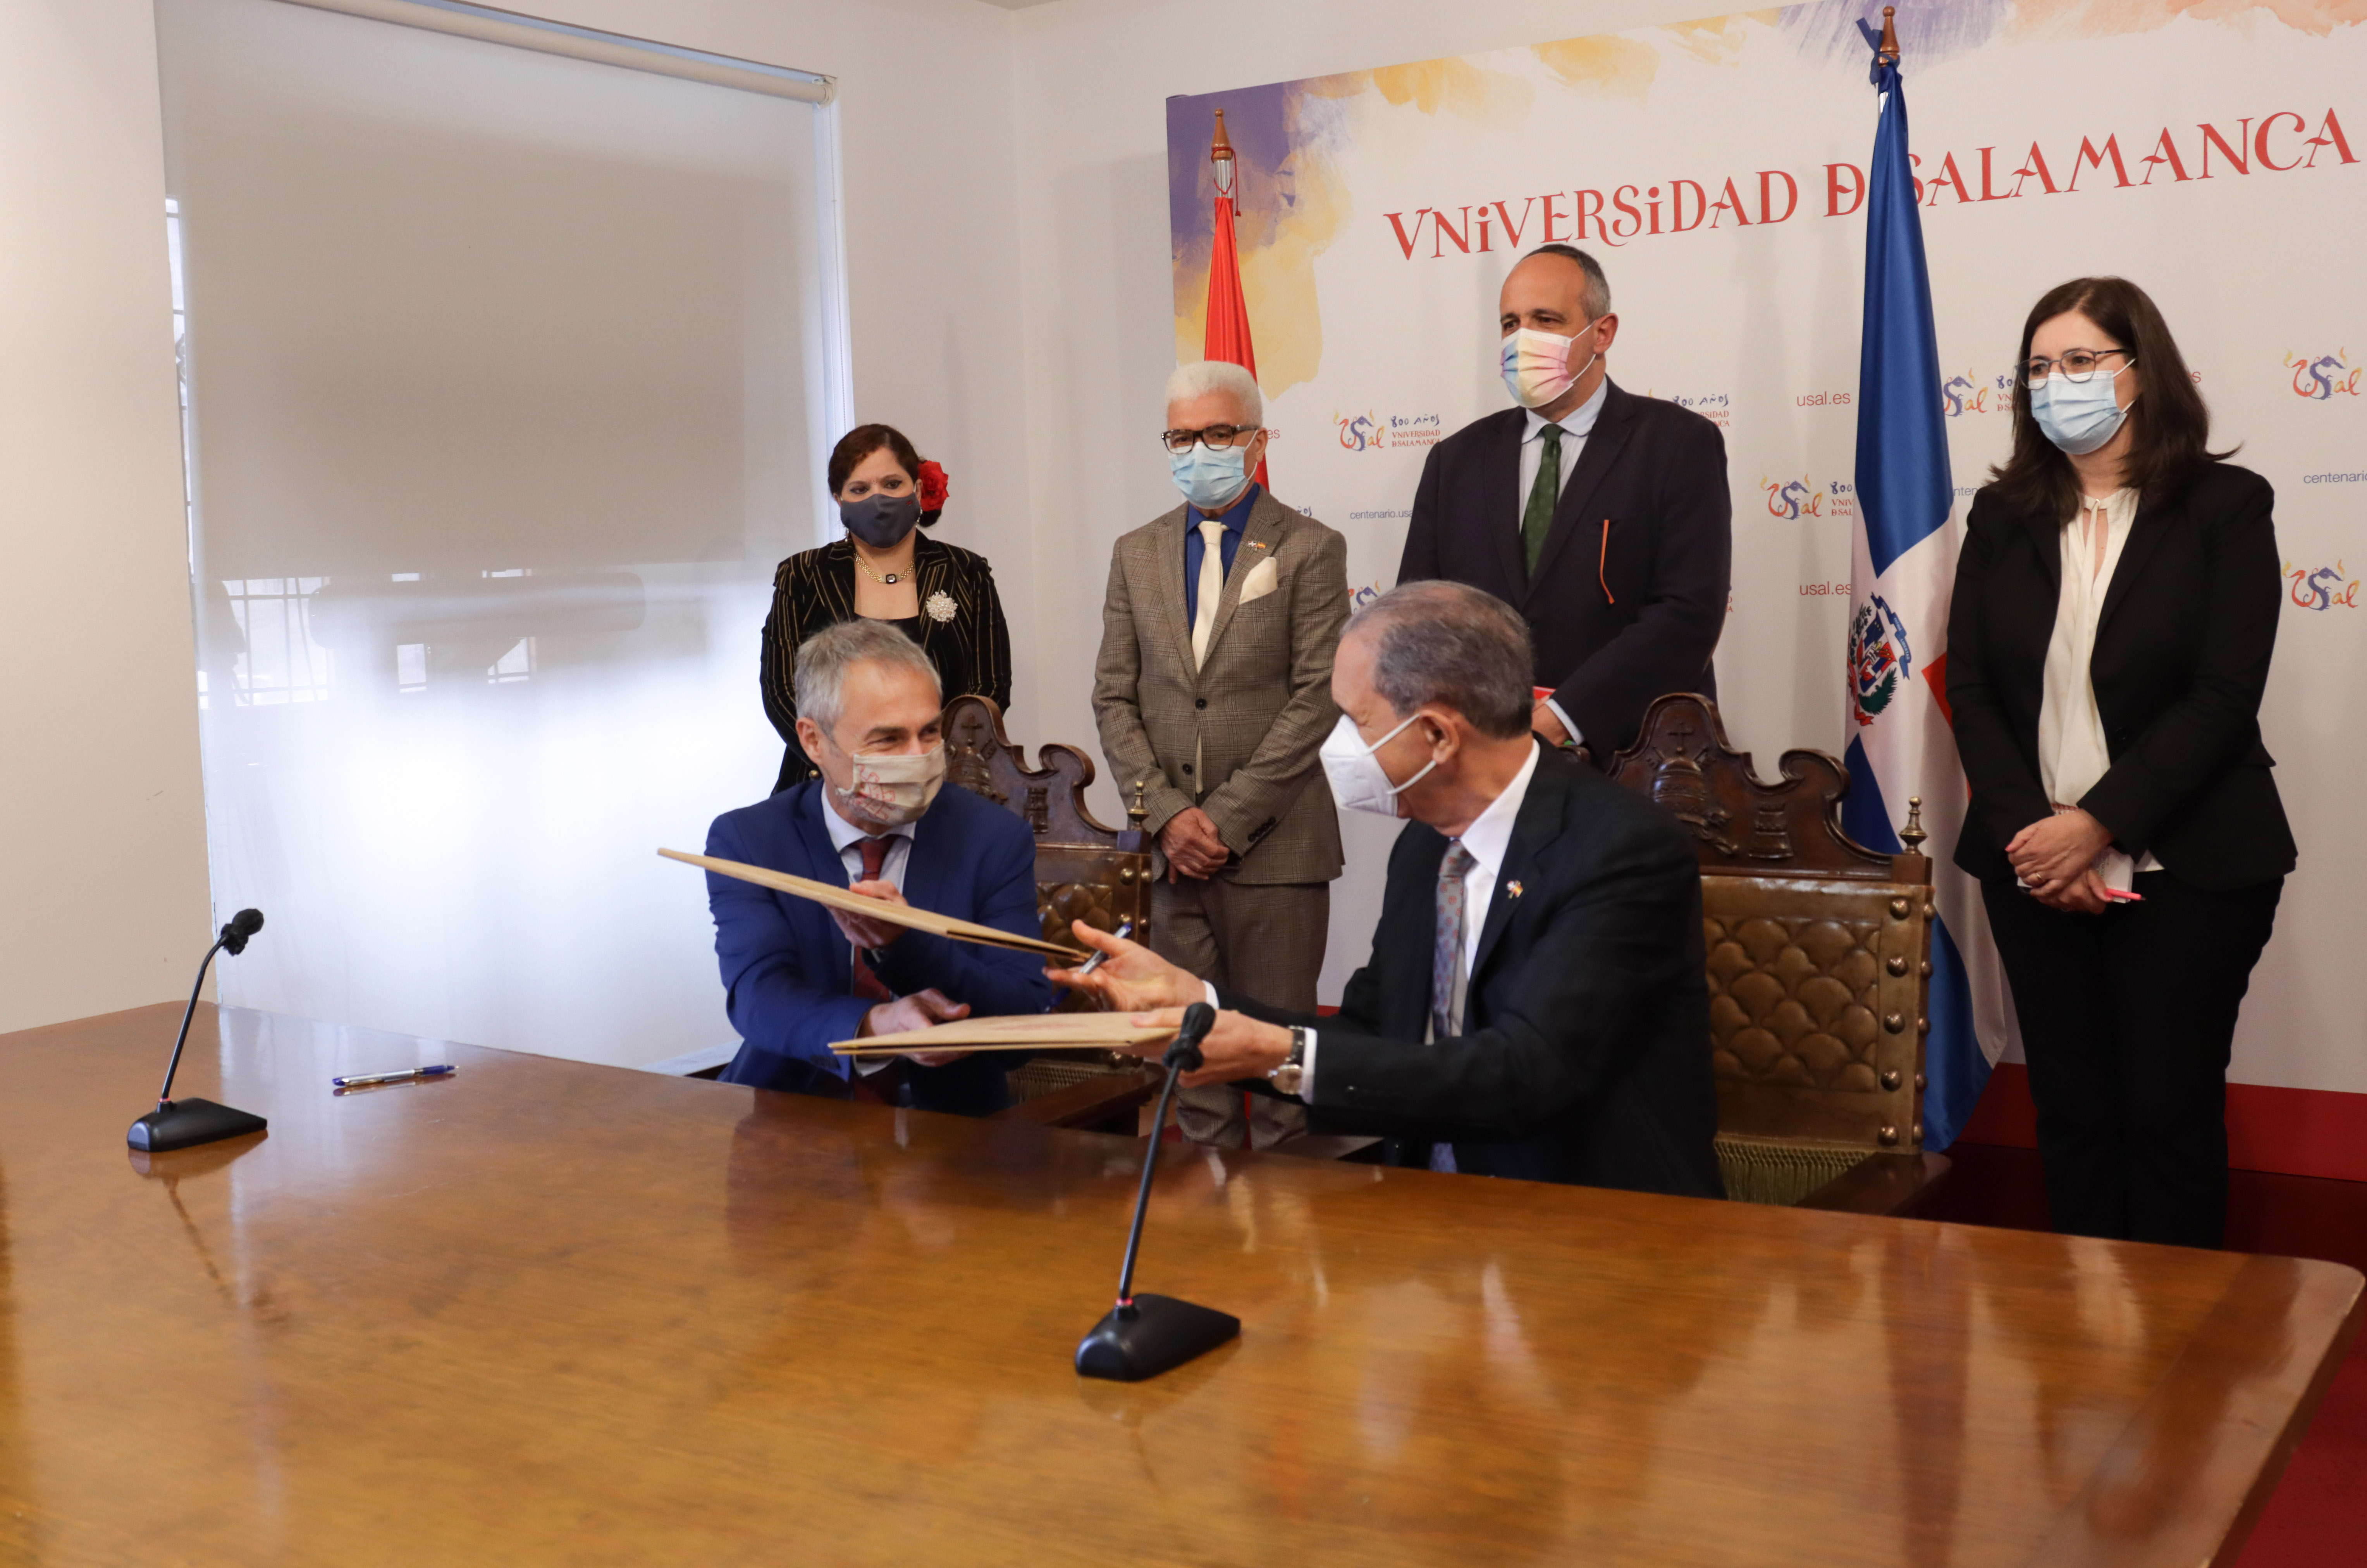 La Universidad de Salamanca refuerza su colaboración con la República Dominicana